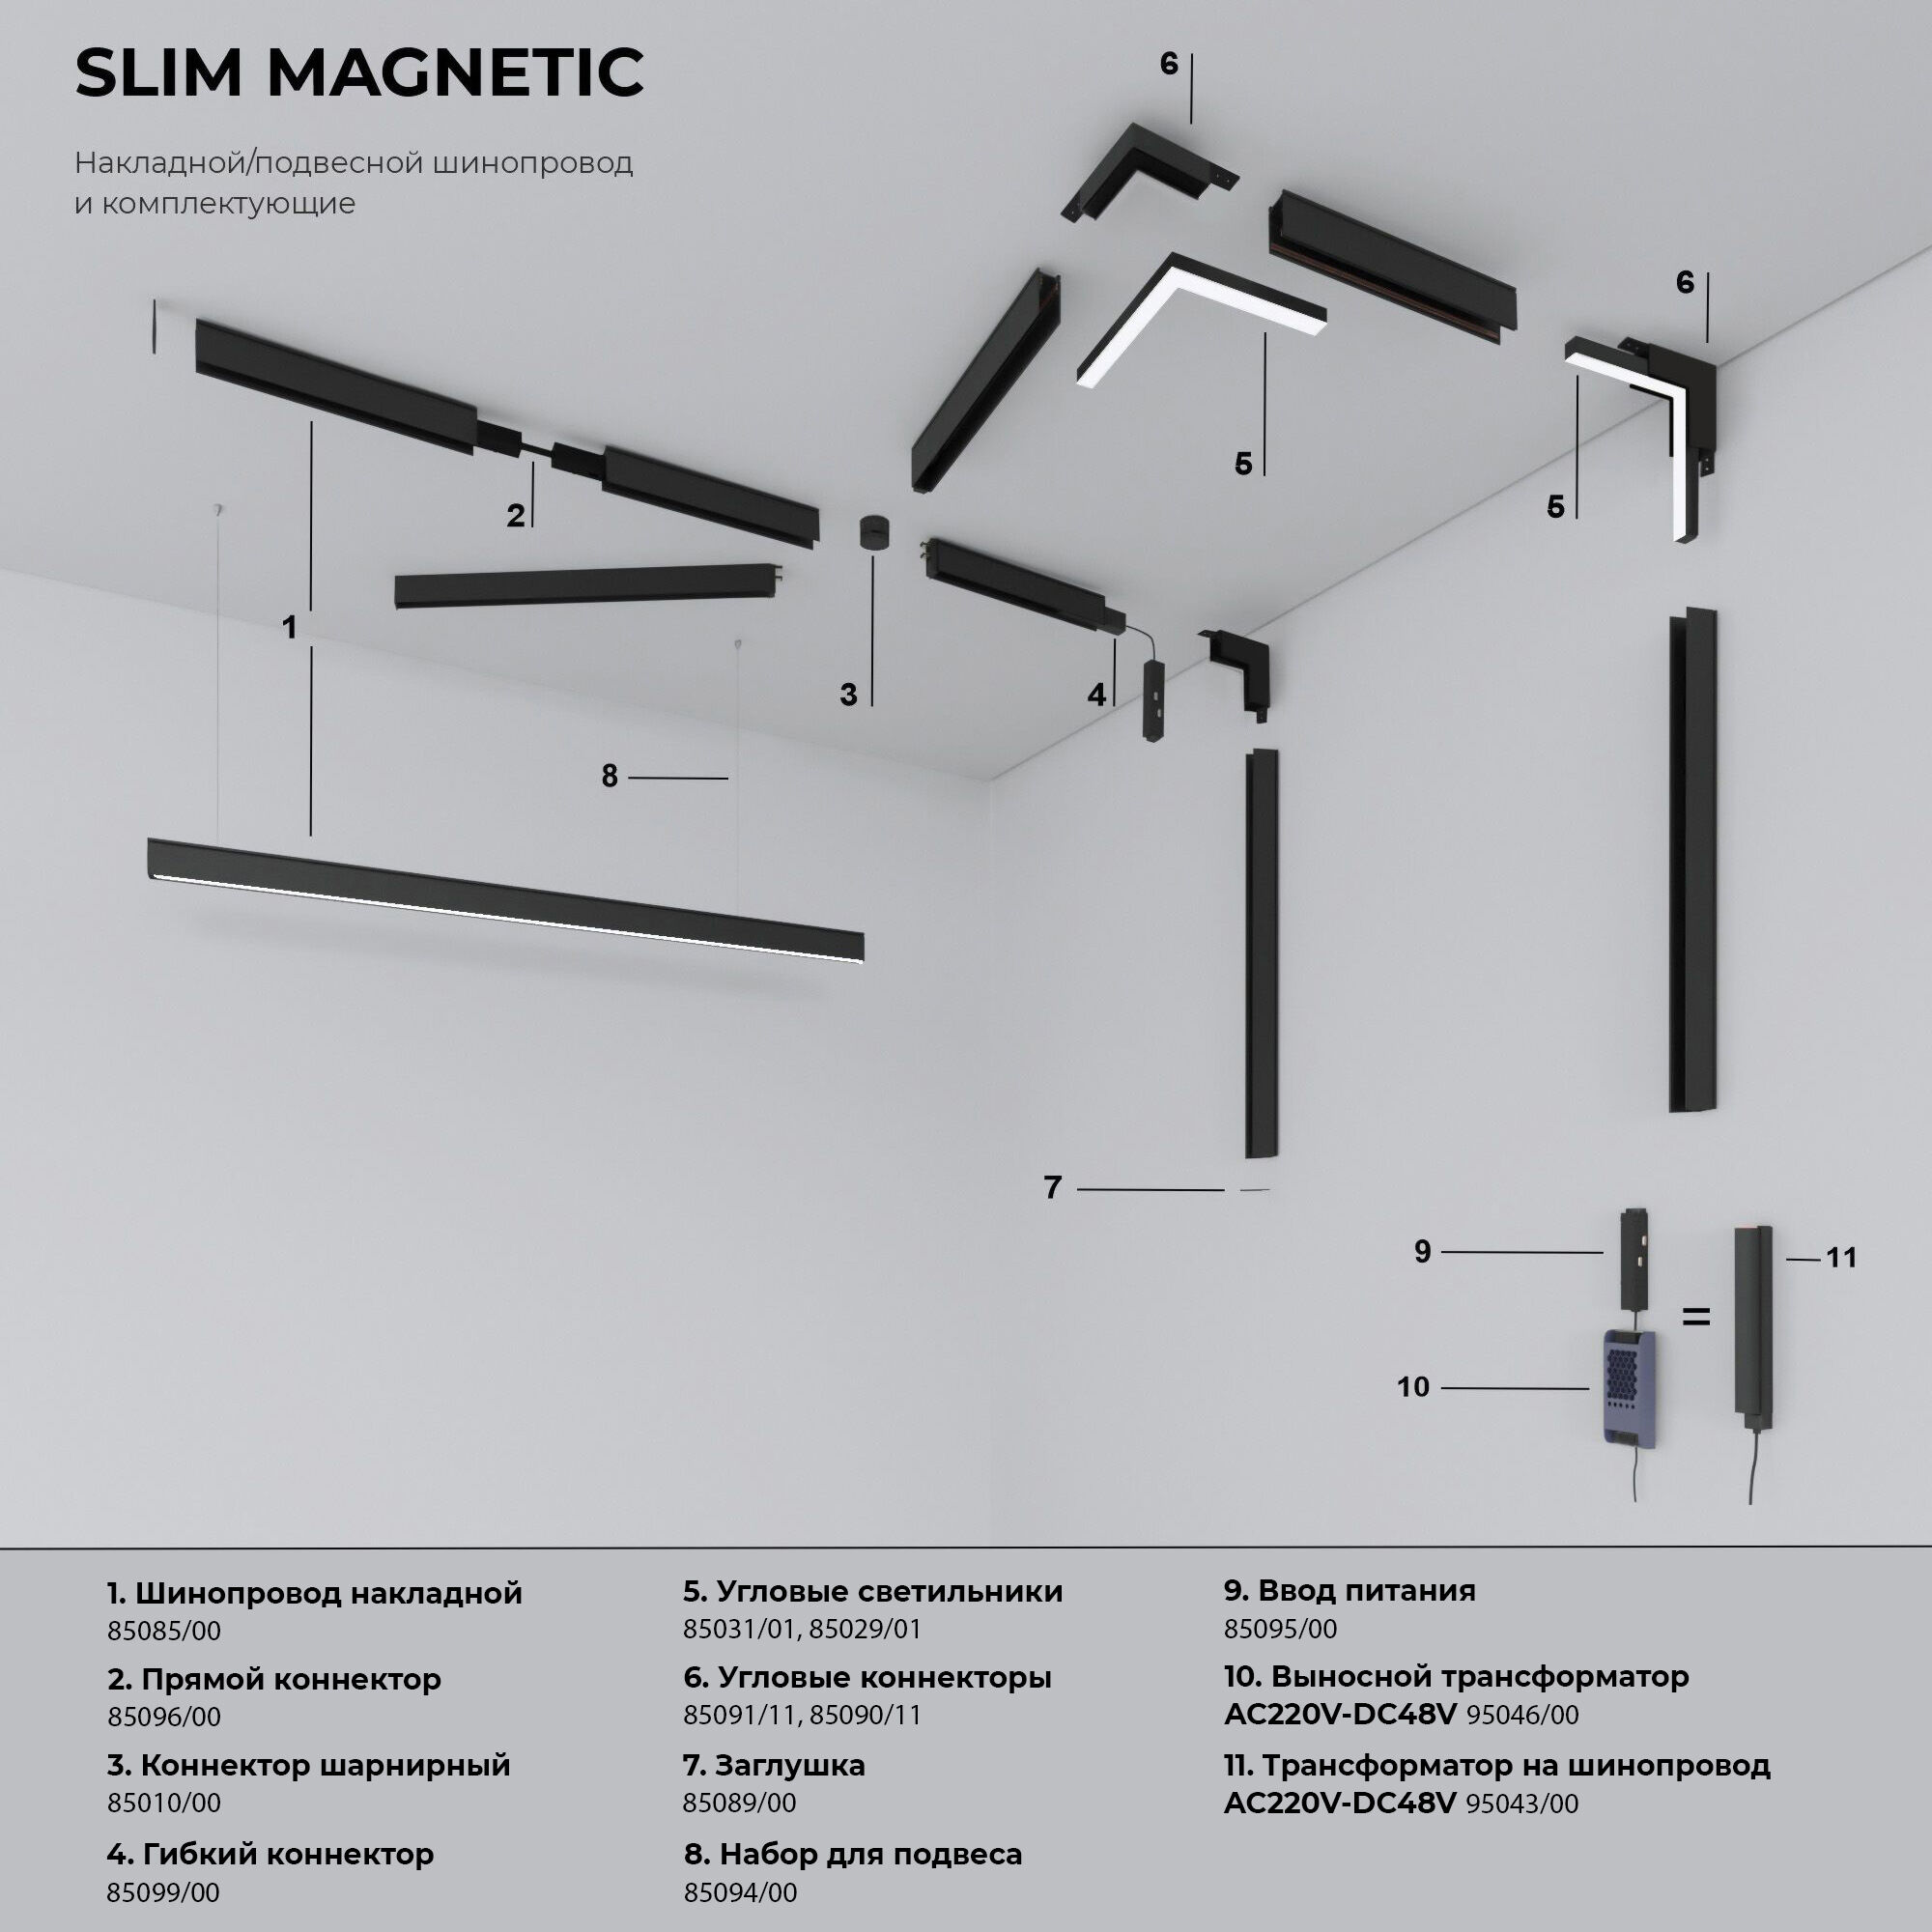 Slim Magnetic Шинопровод накладной черный 2м 85084/00